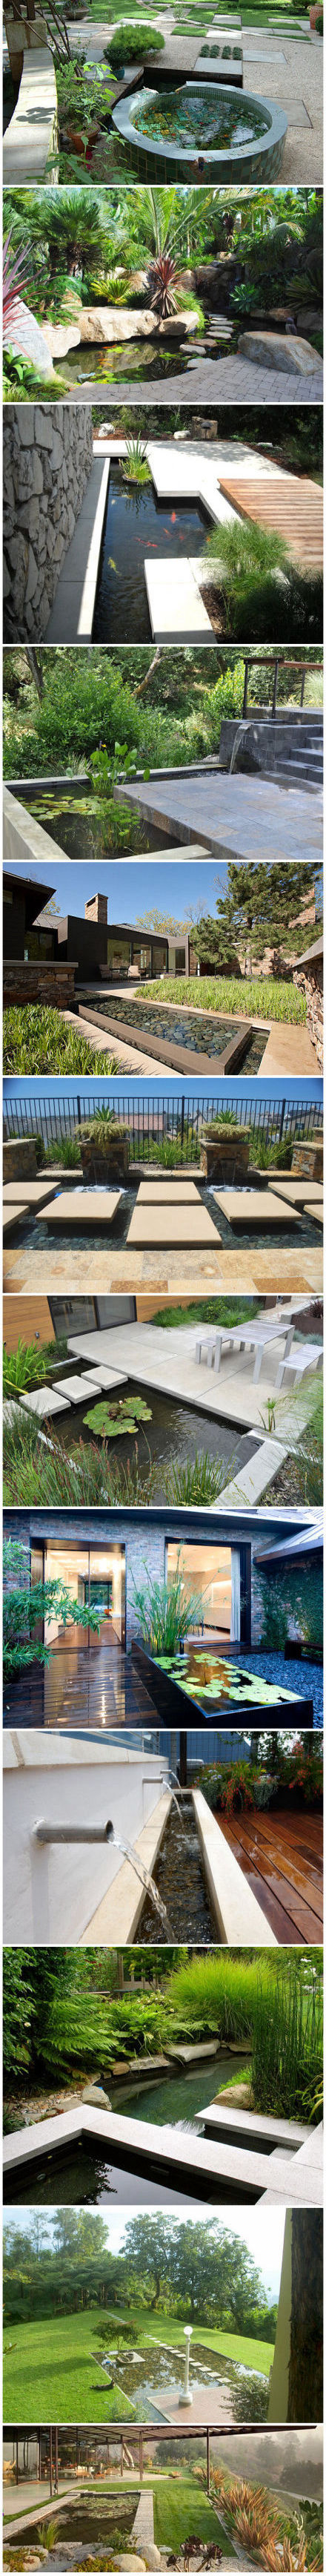 22个庭院花园水景设计,在院子里造一个,让邻居羡慕去吧!